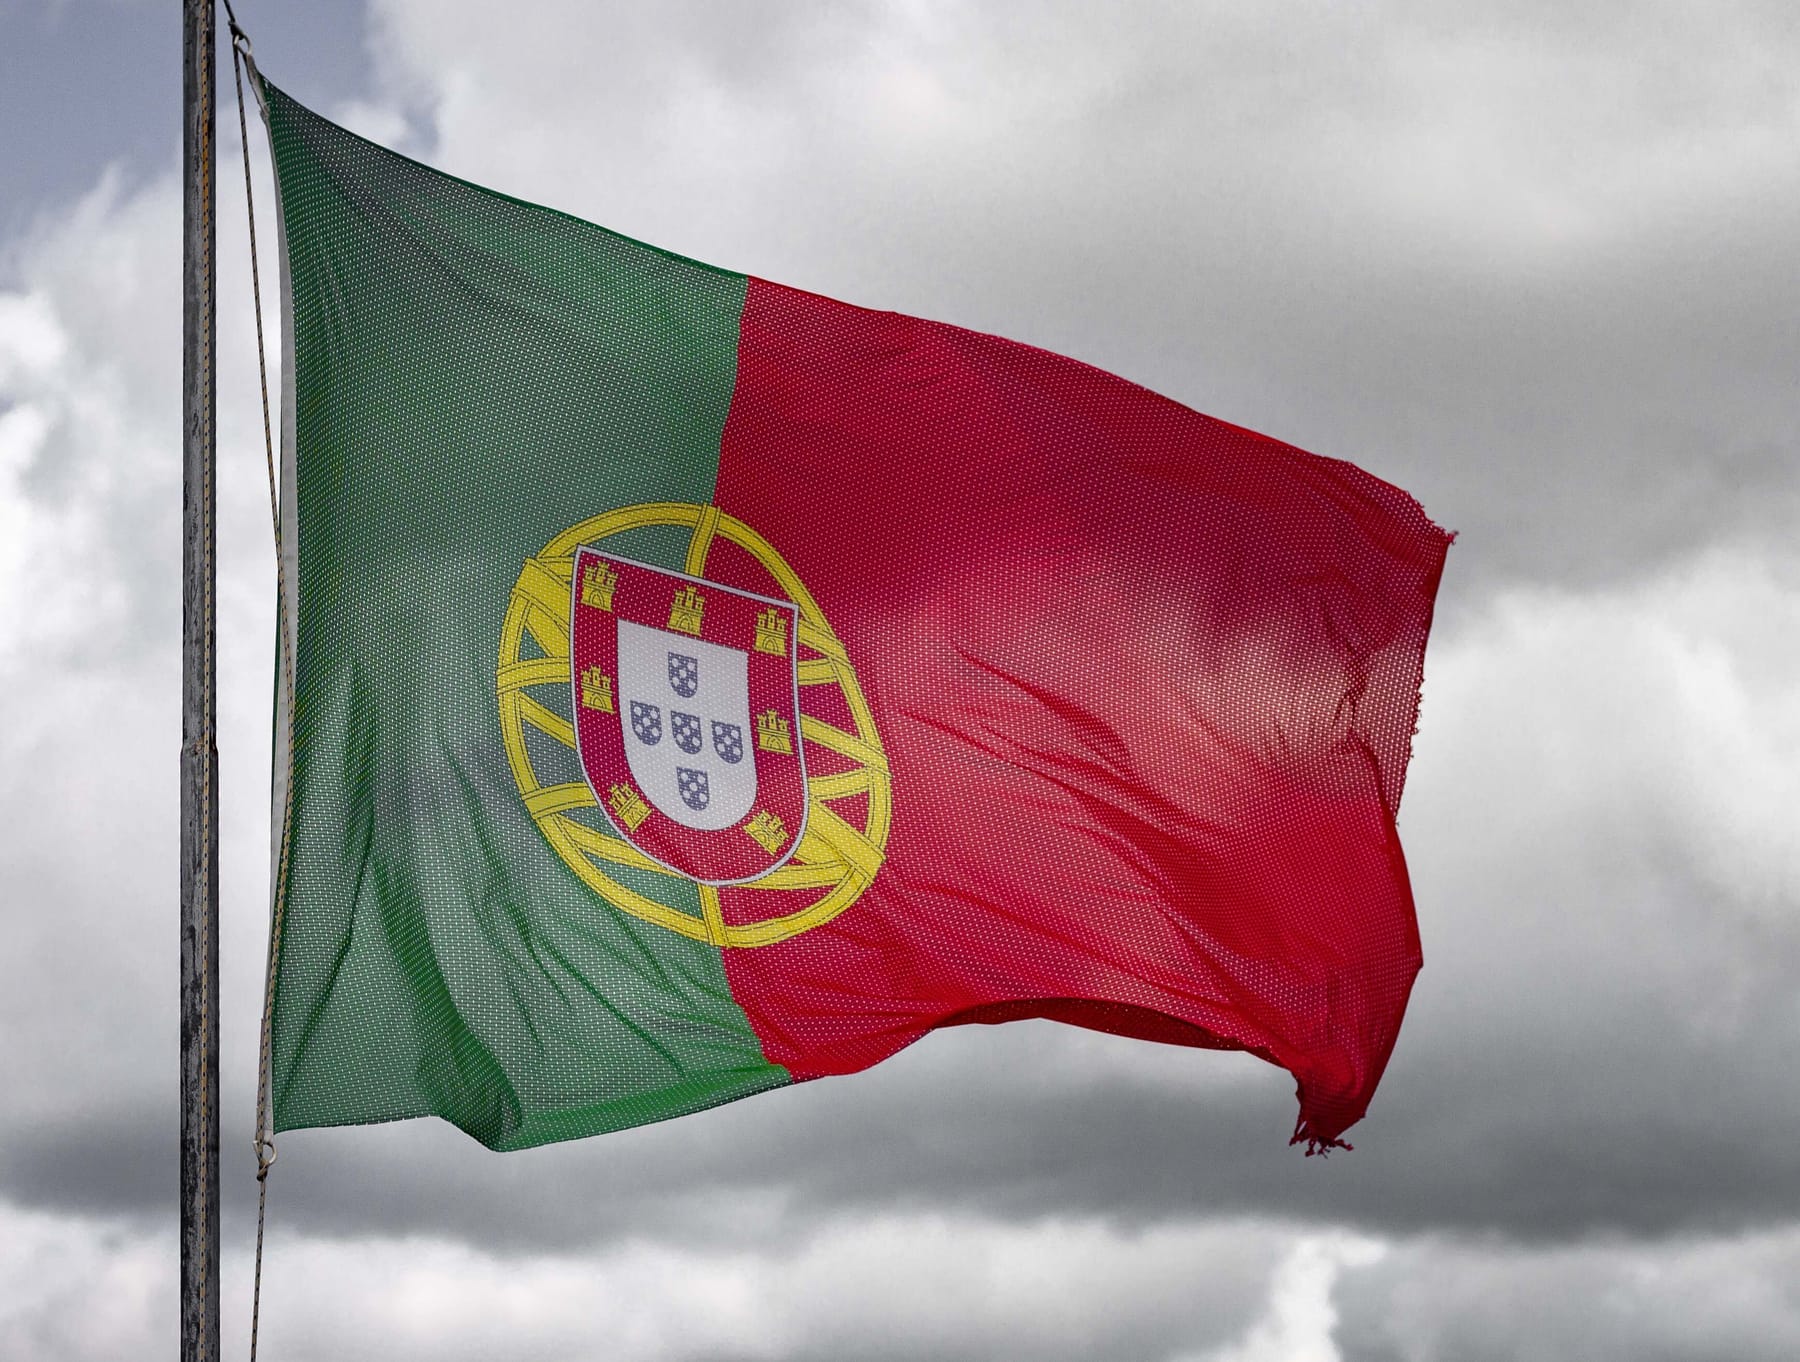 Le drapeau du Portugal : que peut-on apprendre ?